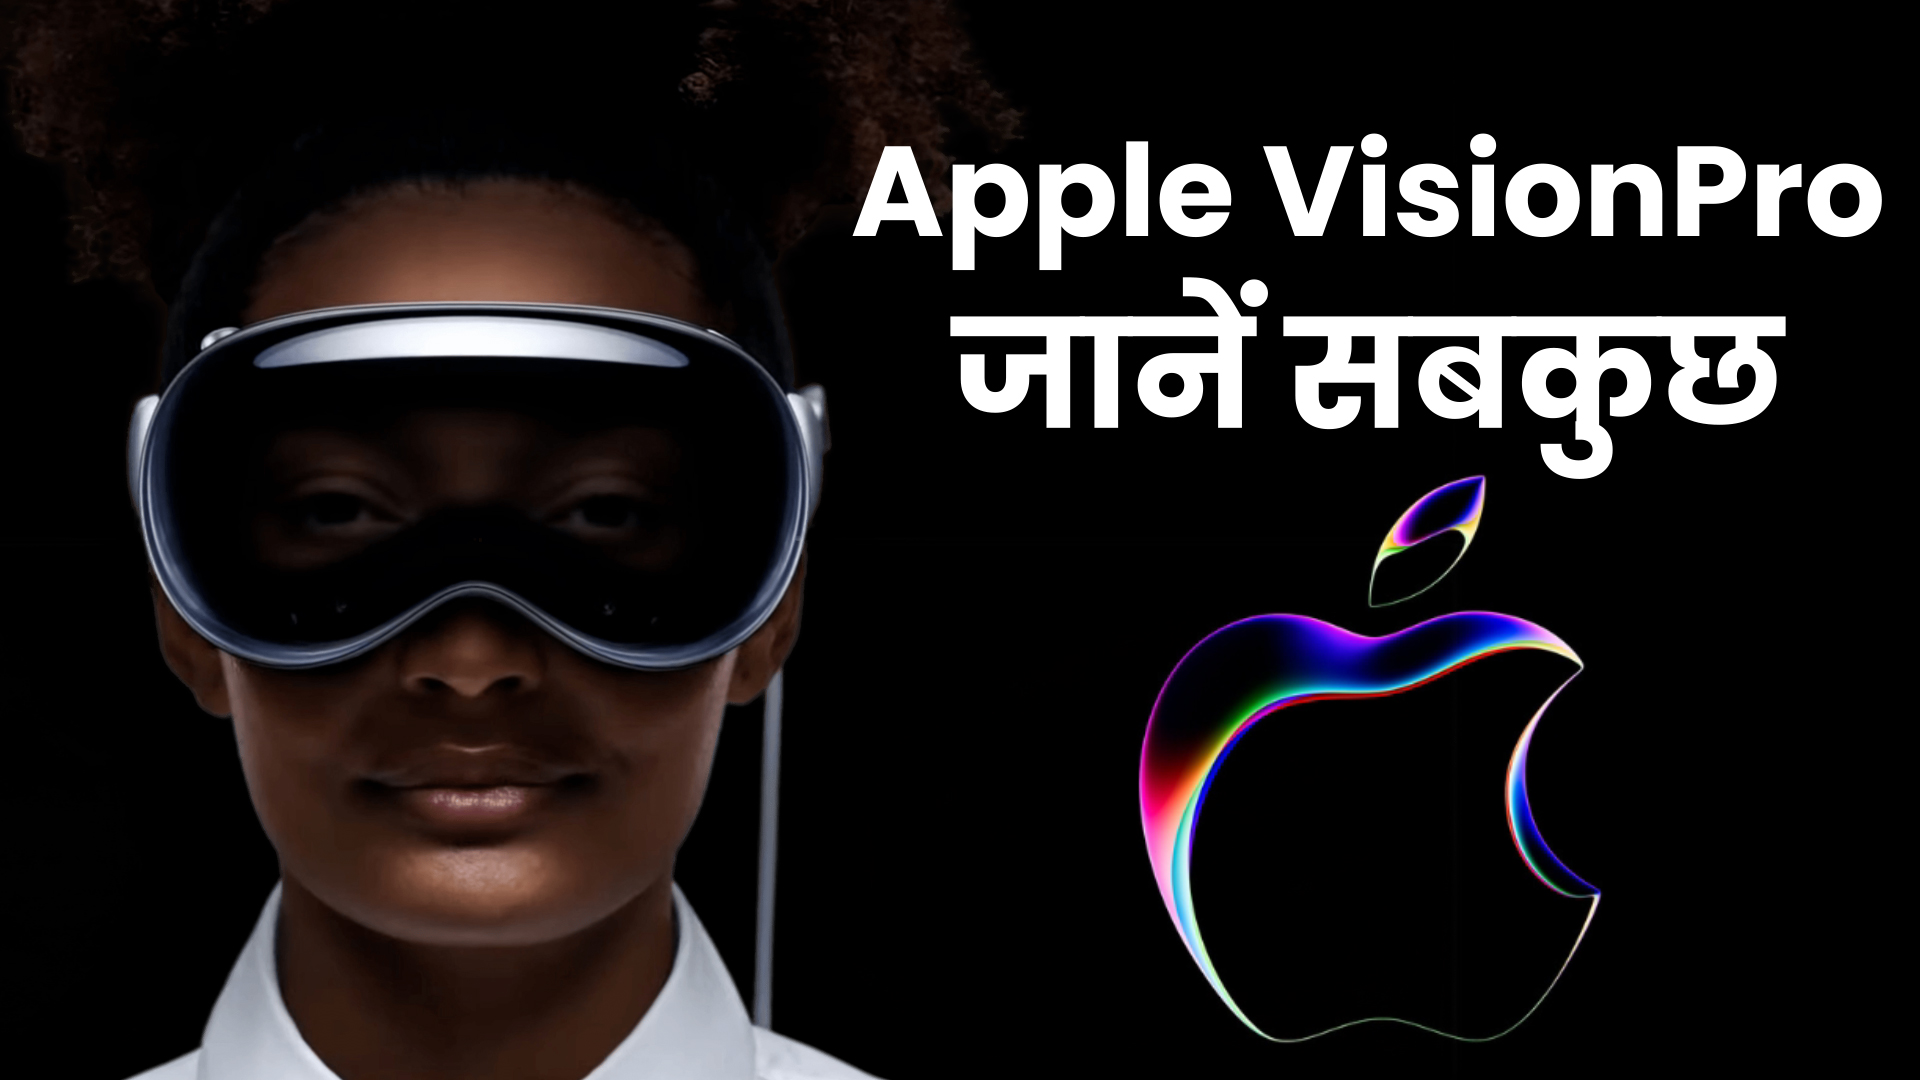 Apple Vision Pro की टेक्नोलॉजी का हो रहा हल्ला, जानें क्या है इसमें खास